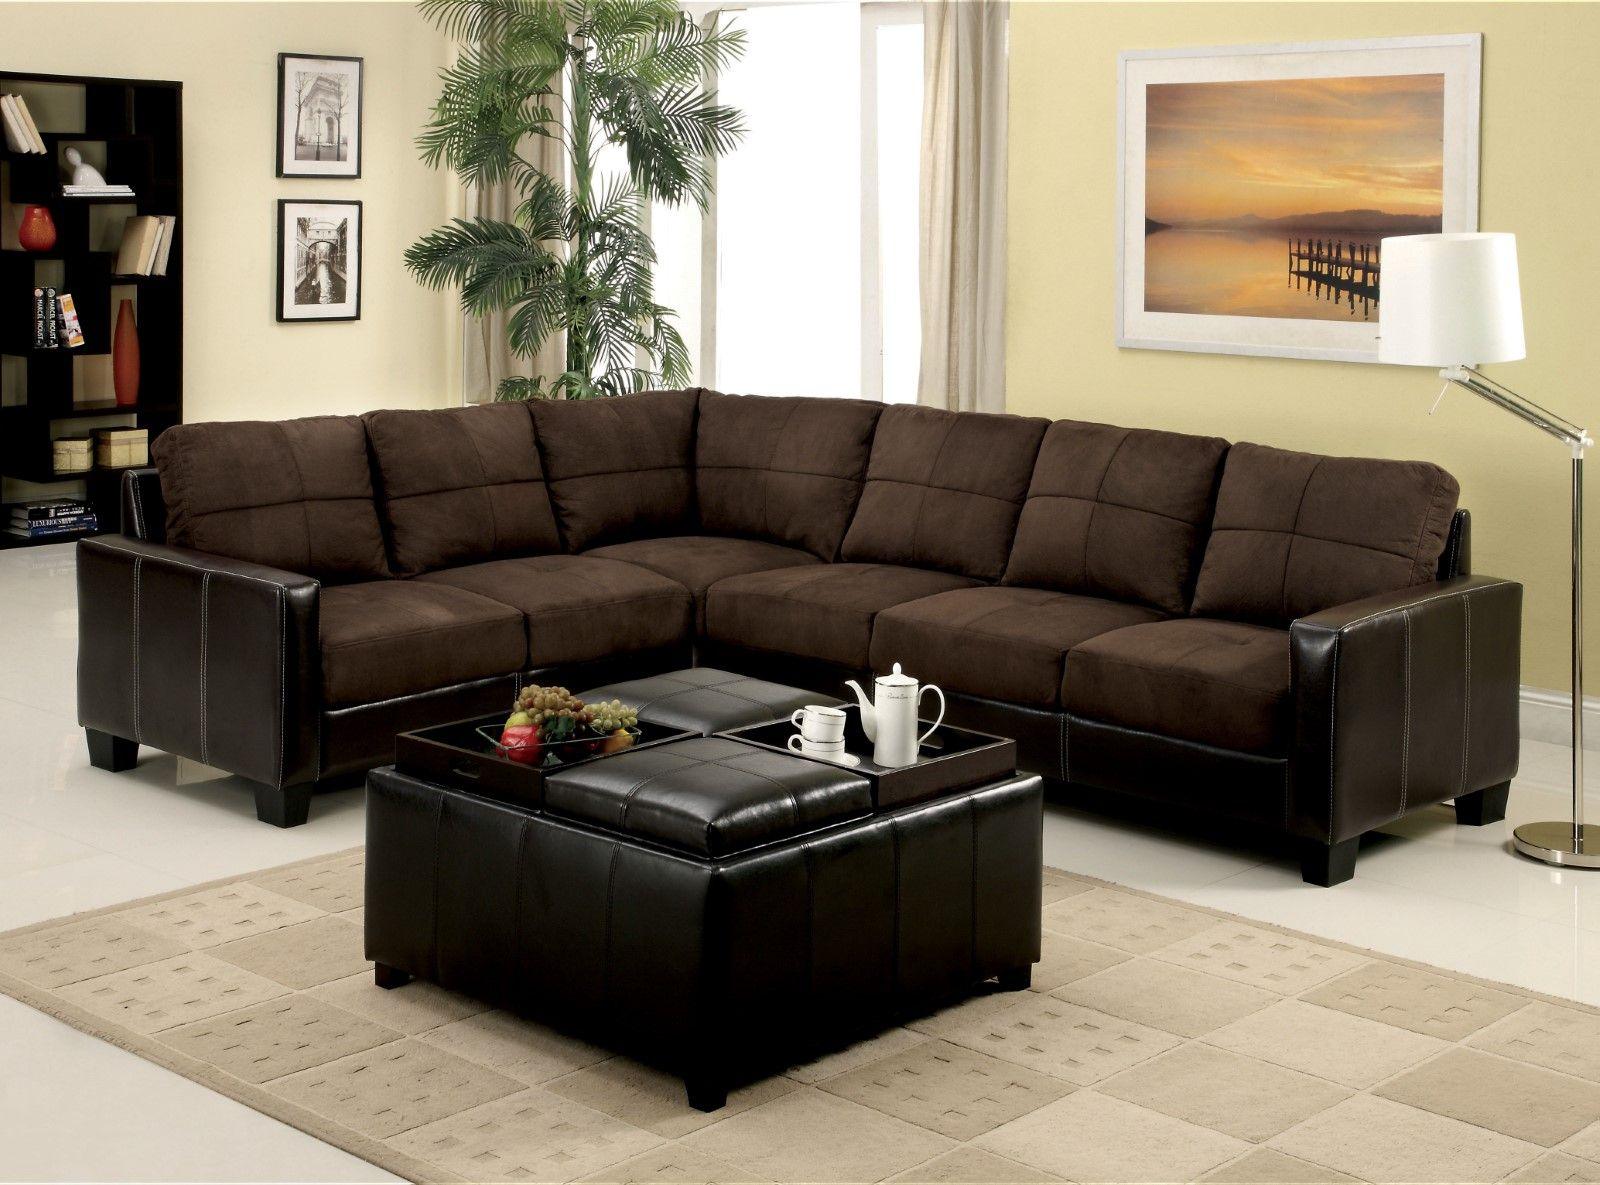 Furniture of America - Lavena - Sectional - Chocolate / Espresso - 5th Avenue Furniture